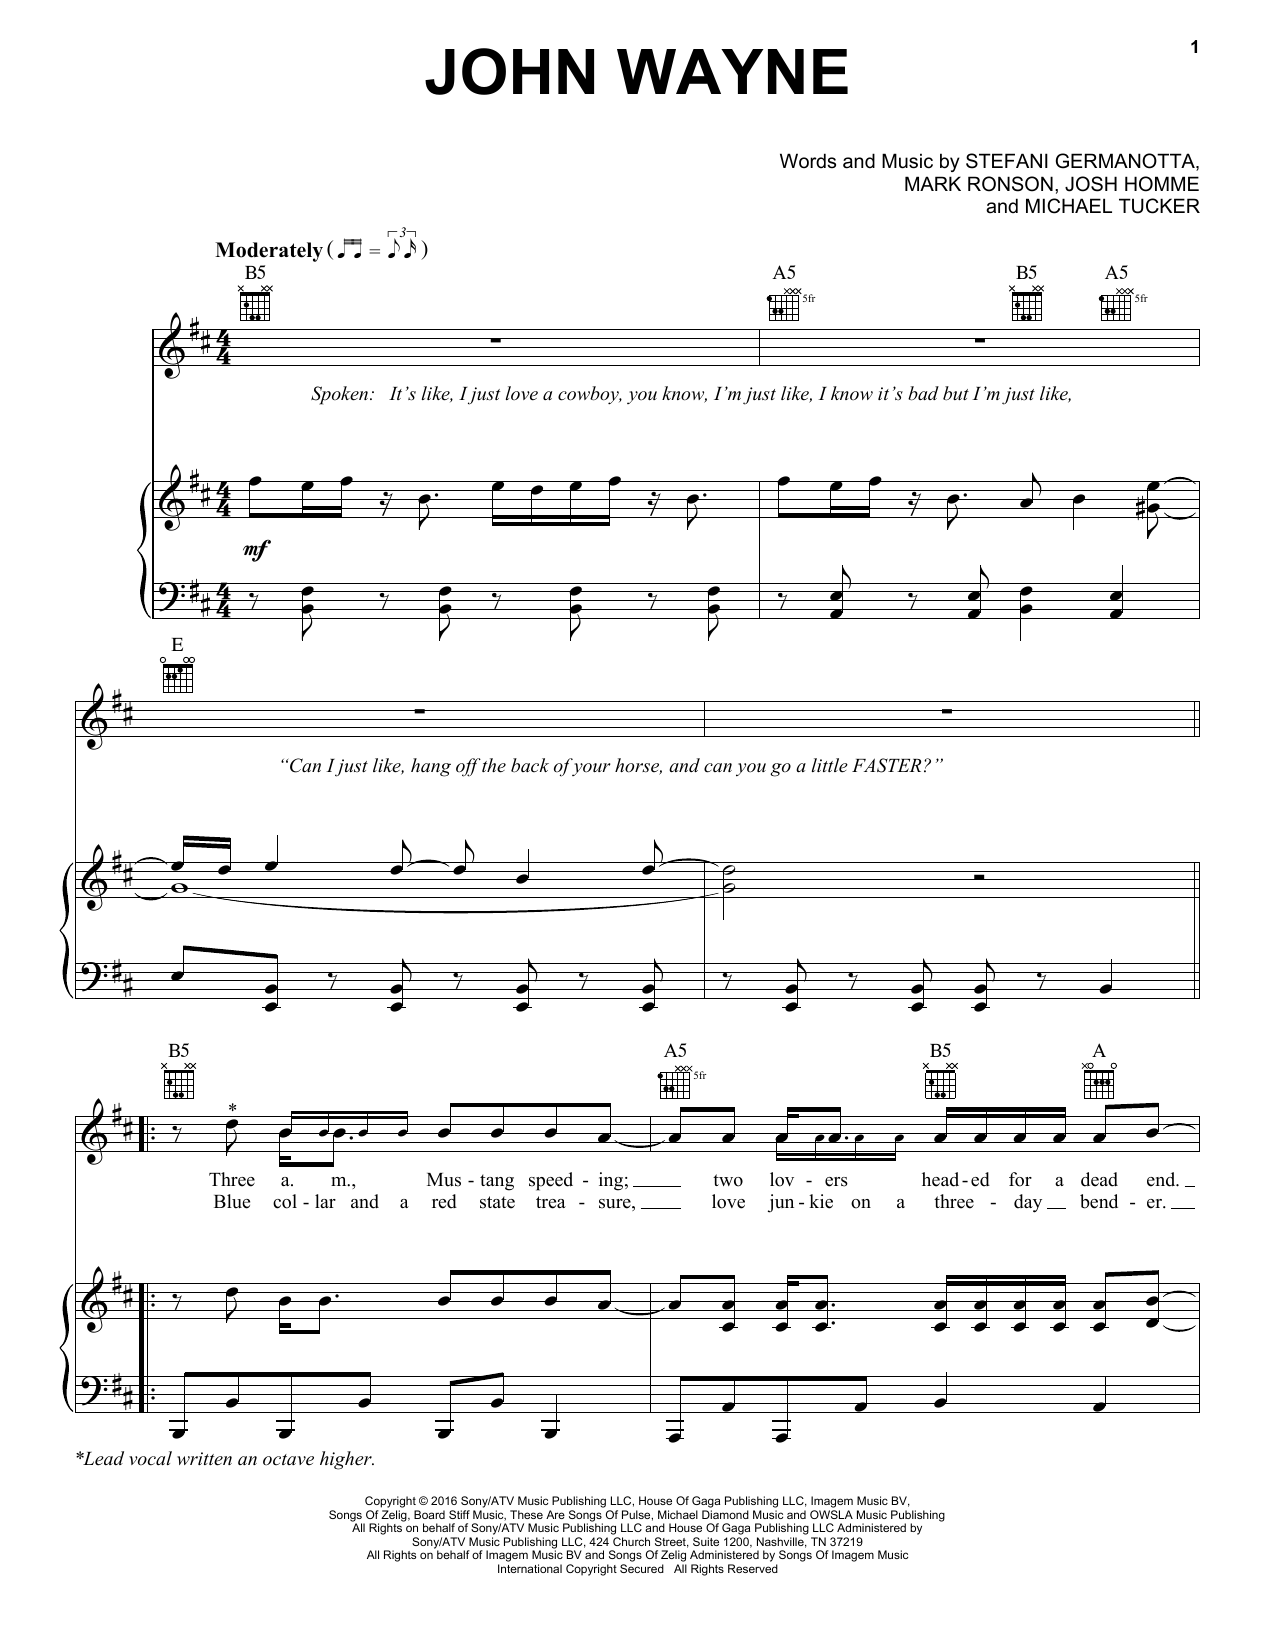 Lady Gaga John Wayne Sheet Music Notes & Chords for Piano, Vocal & Guitar (Right-Hand Melody) - Download or Print PDF